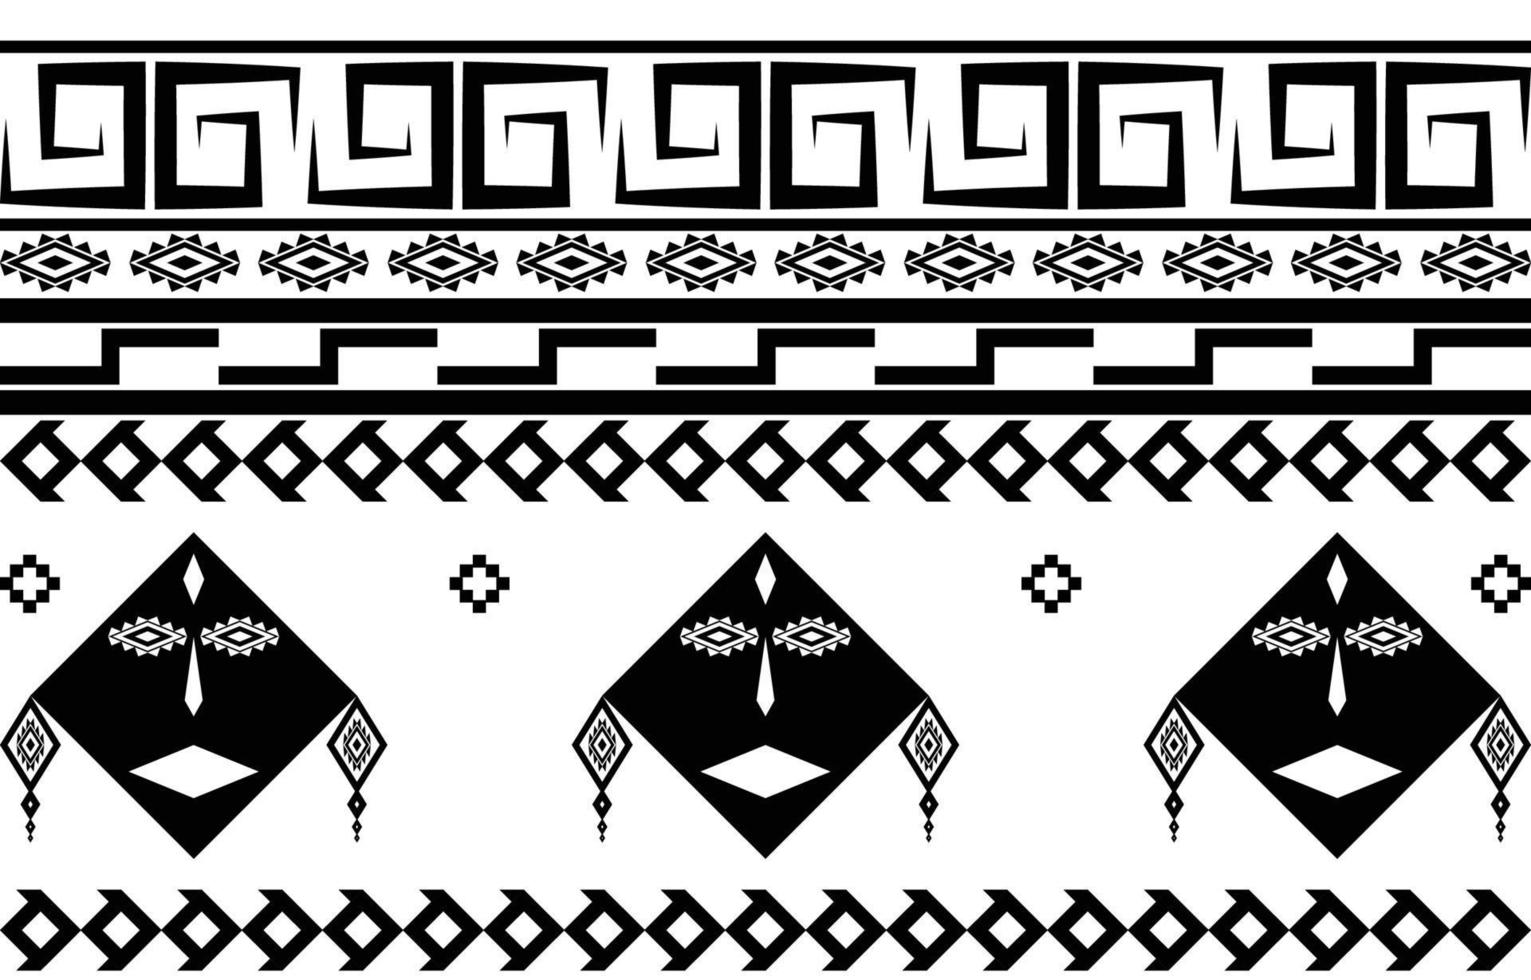 visage tribal motif géométrique abstrait ethnique noir et blanc pour le fond ou le papier peint.illustration vectorielle pour imprimer des motifs de tissu, des tapis, des chemises, des costumes, des turbans, des chapeaux, des rideaux. vecteur